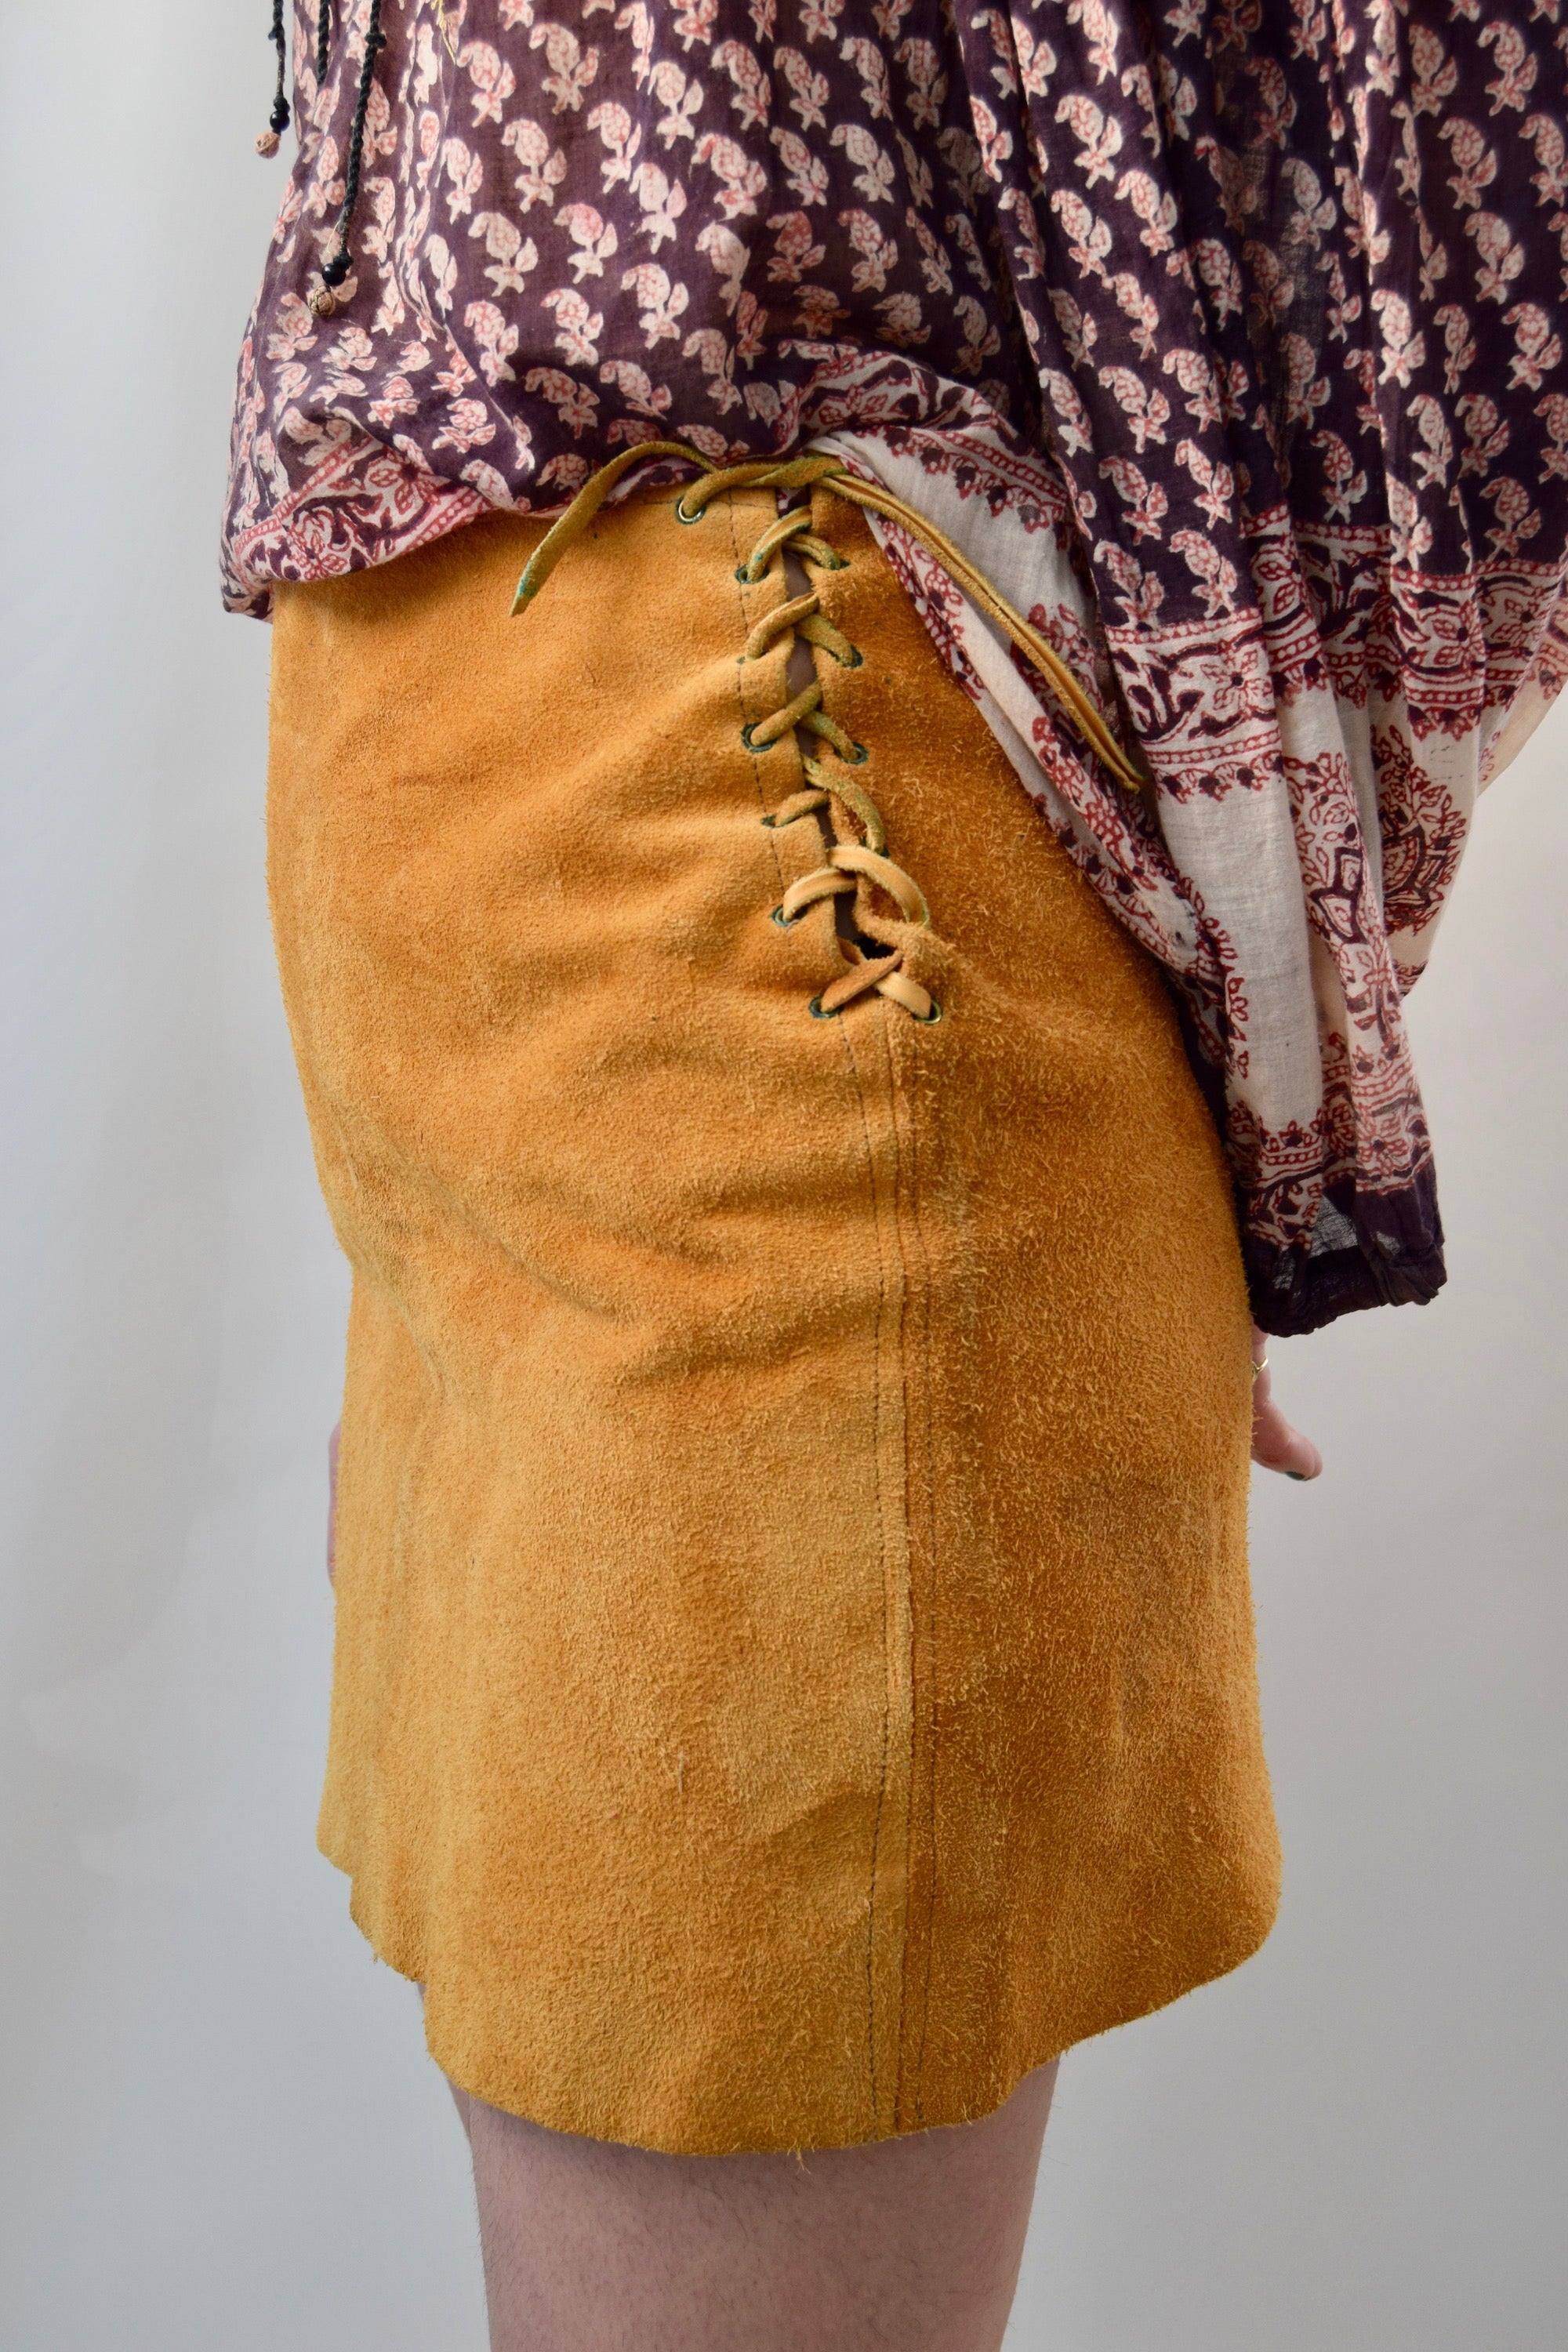 Vintage Tawny Suede Mini Skirt